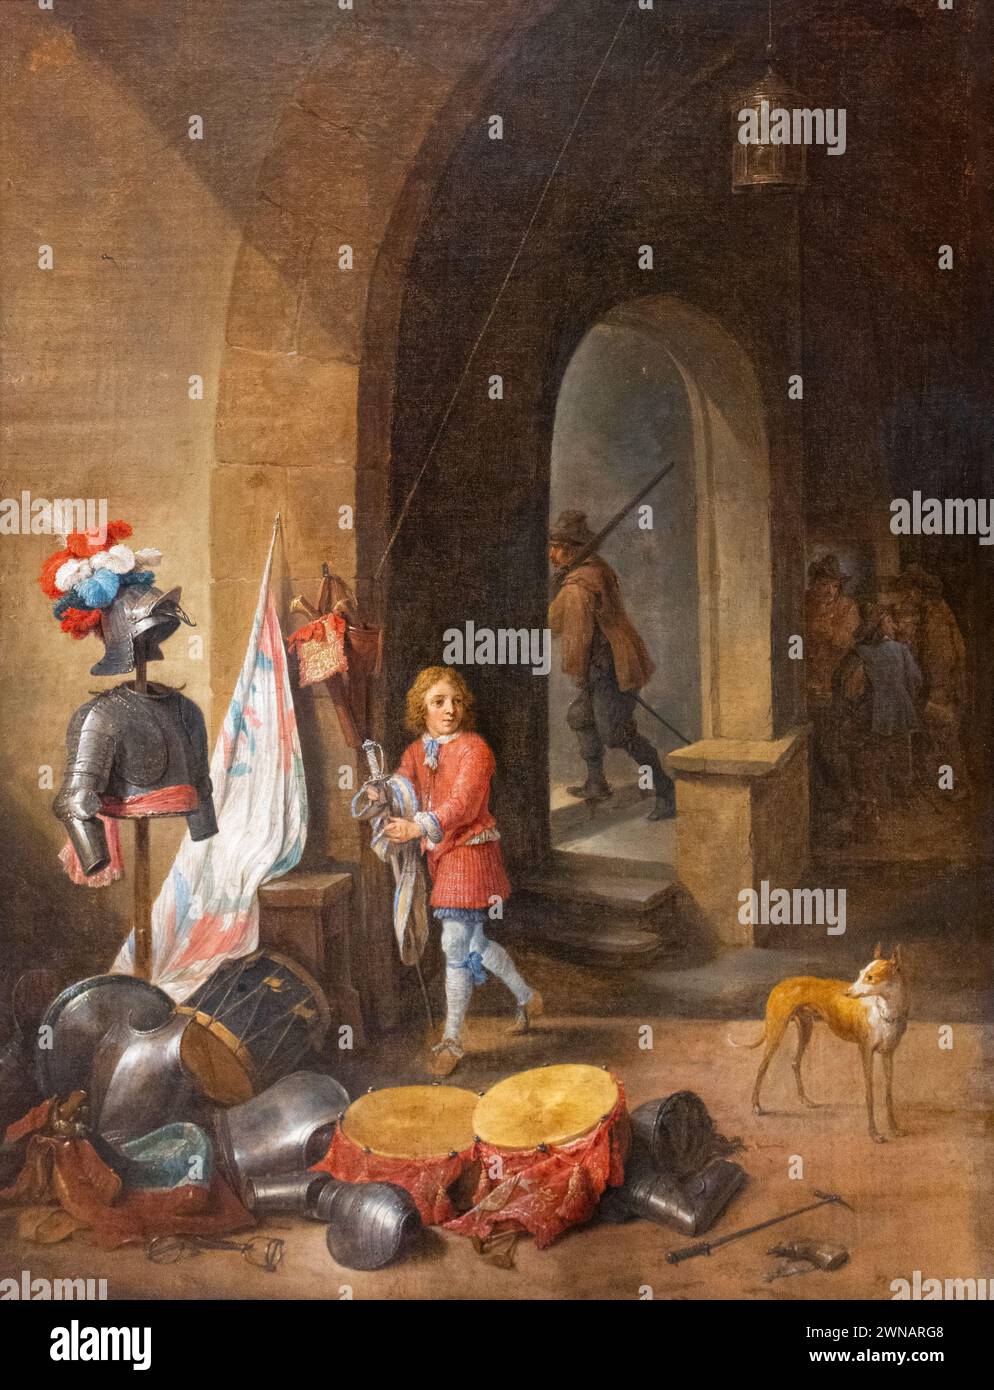 David Teniers le jeune tableau ; 'A Guardroom', années 1640 ; Guardroom des années 1600 ; peintre baroque flamand du XVIIe siècle, 1610-1690 Banque D'Images